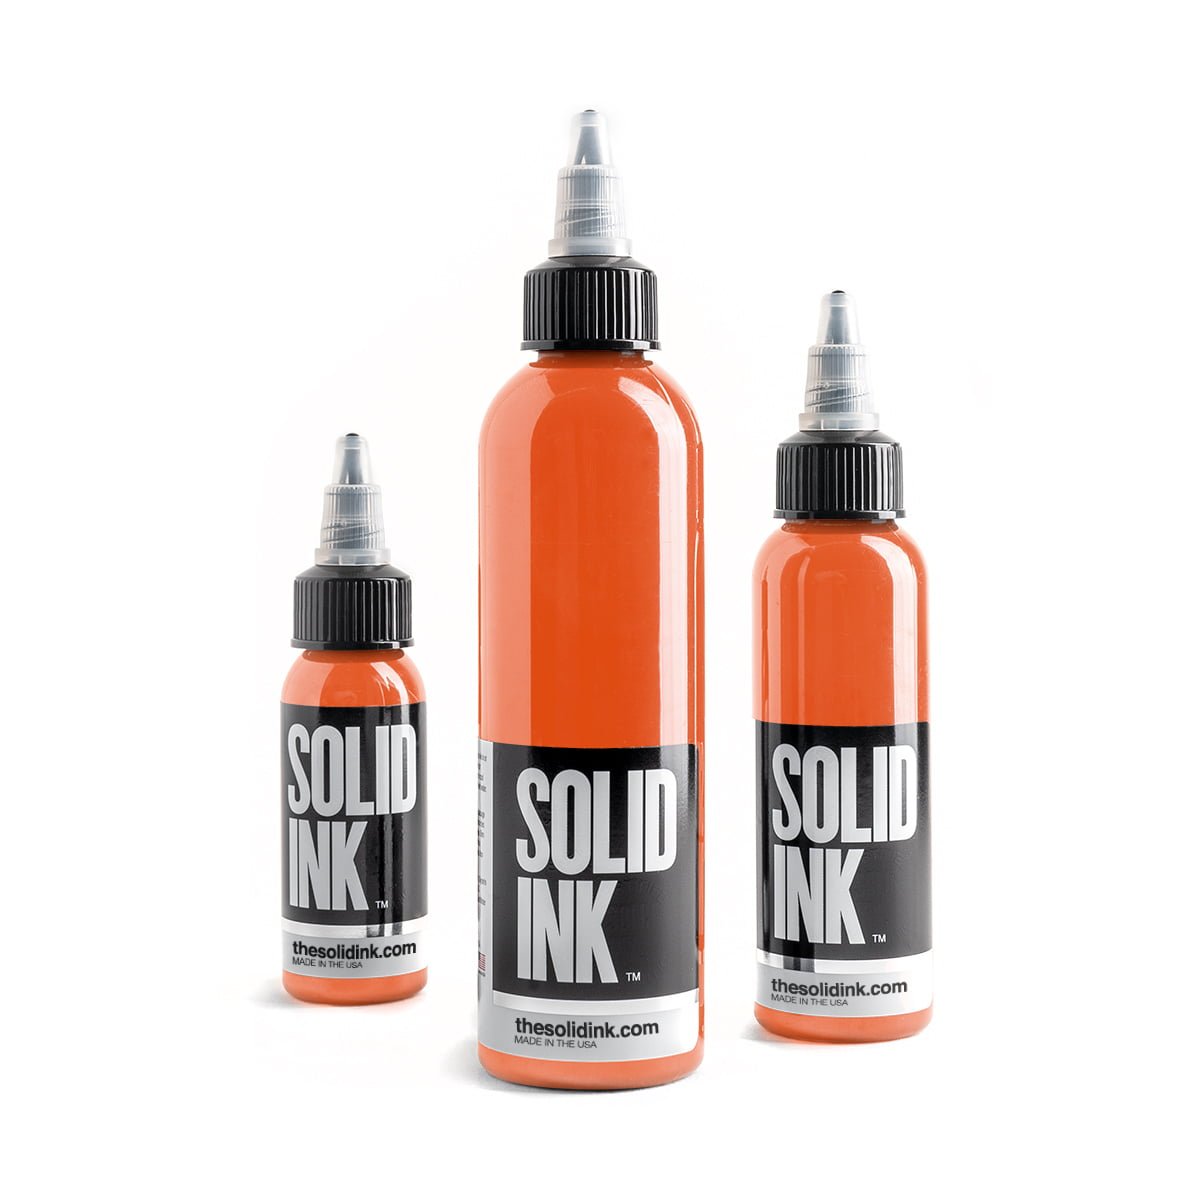 SOLID INK Golden Orange Ink